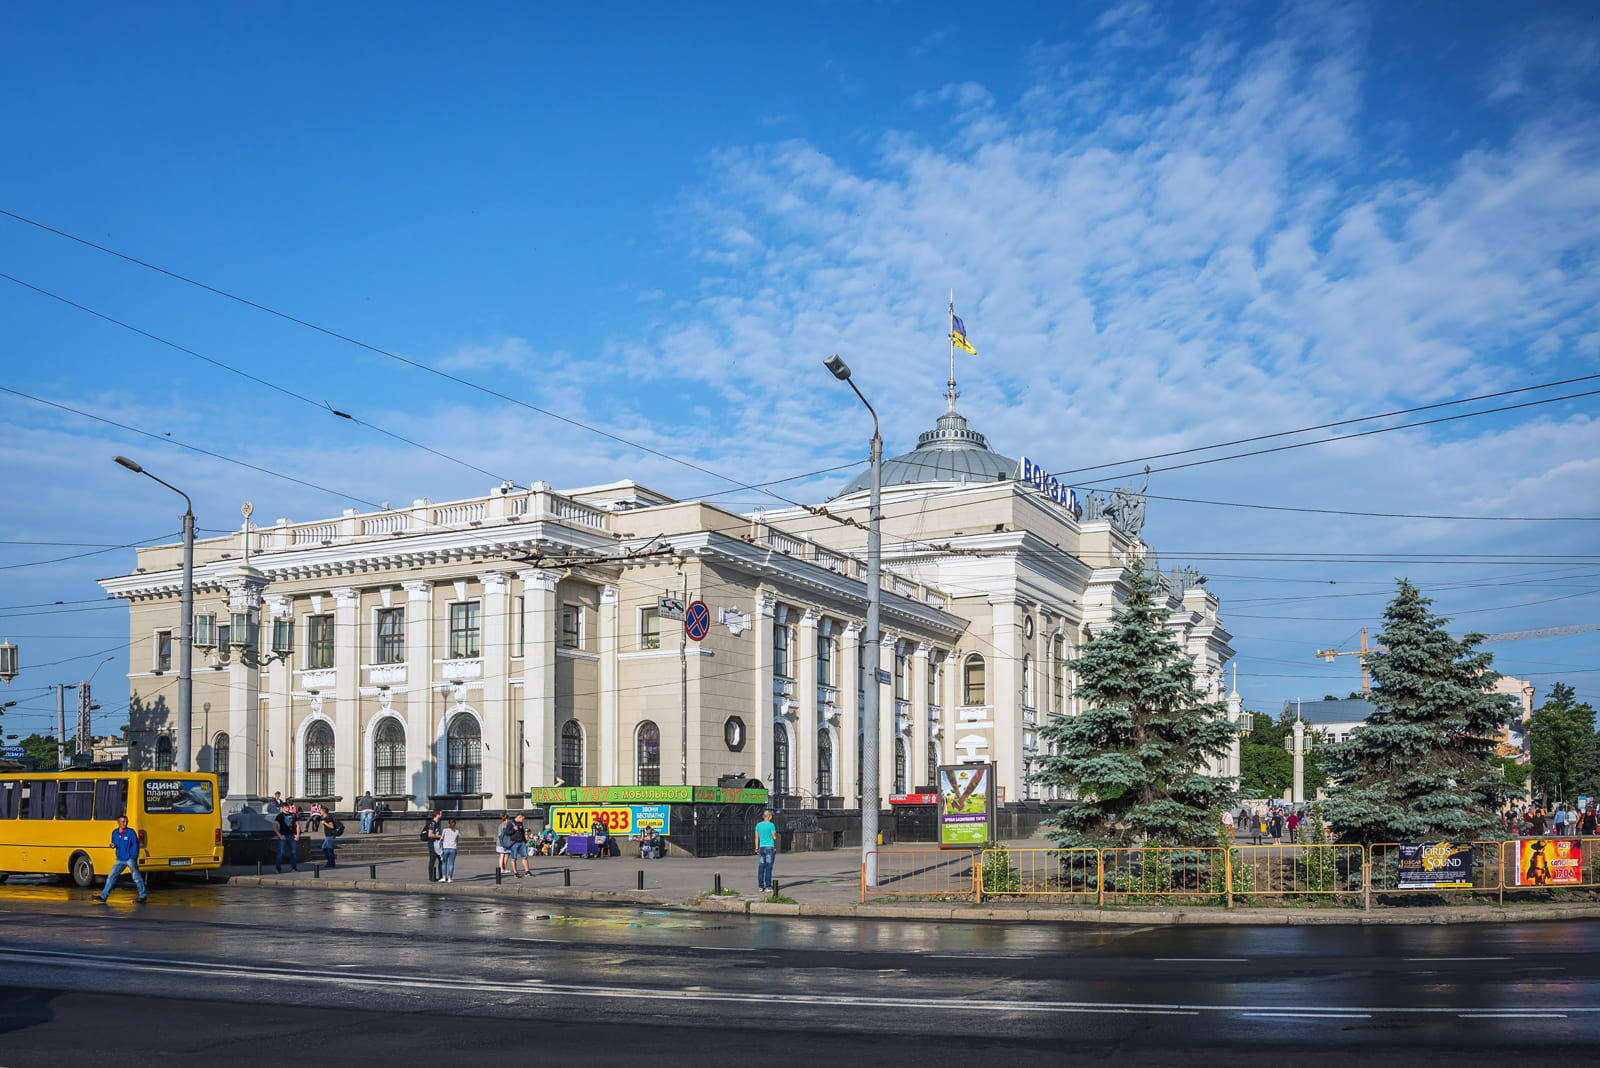 Железнодорожный вокзал в Одессе